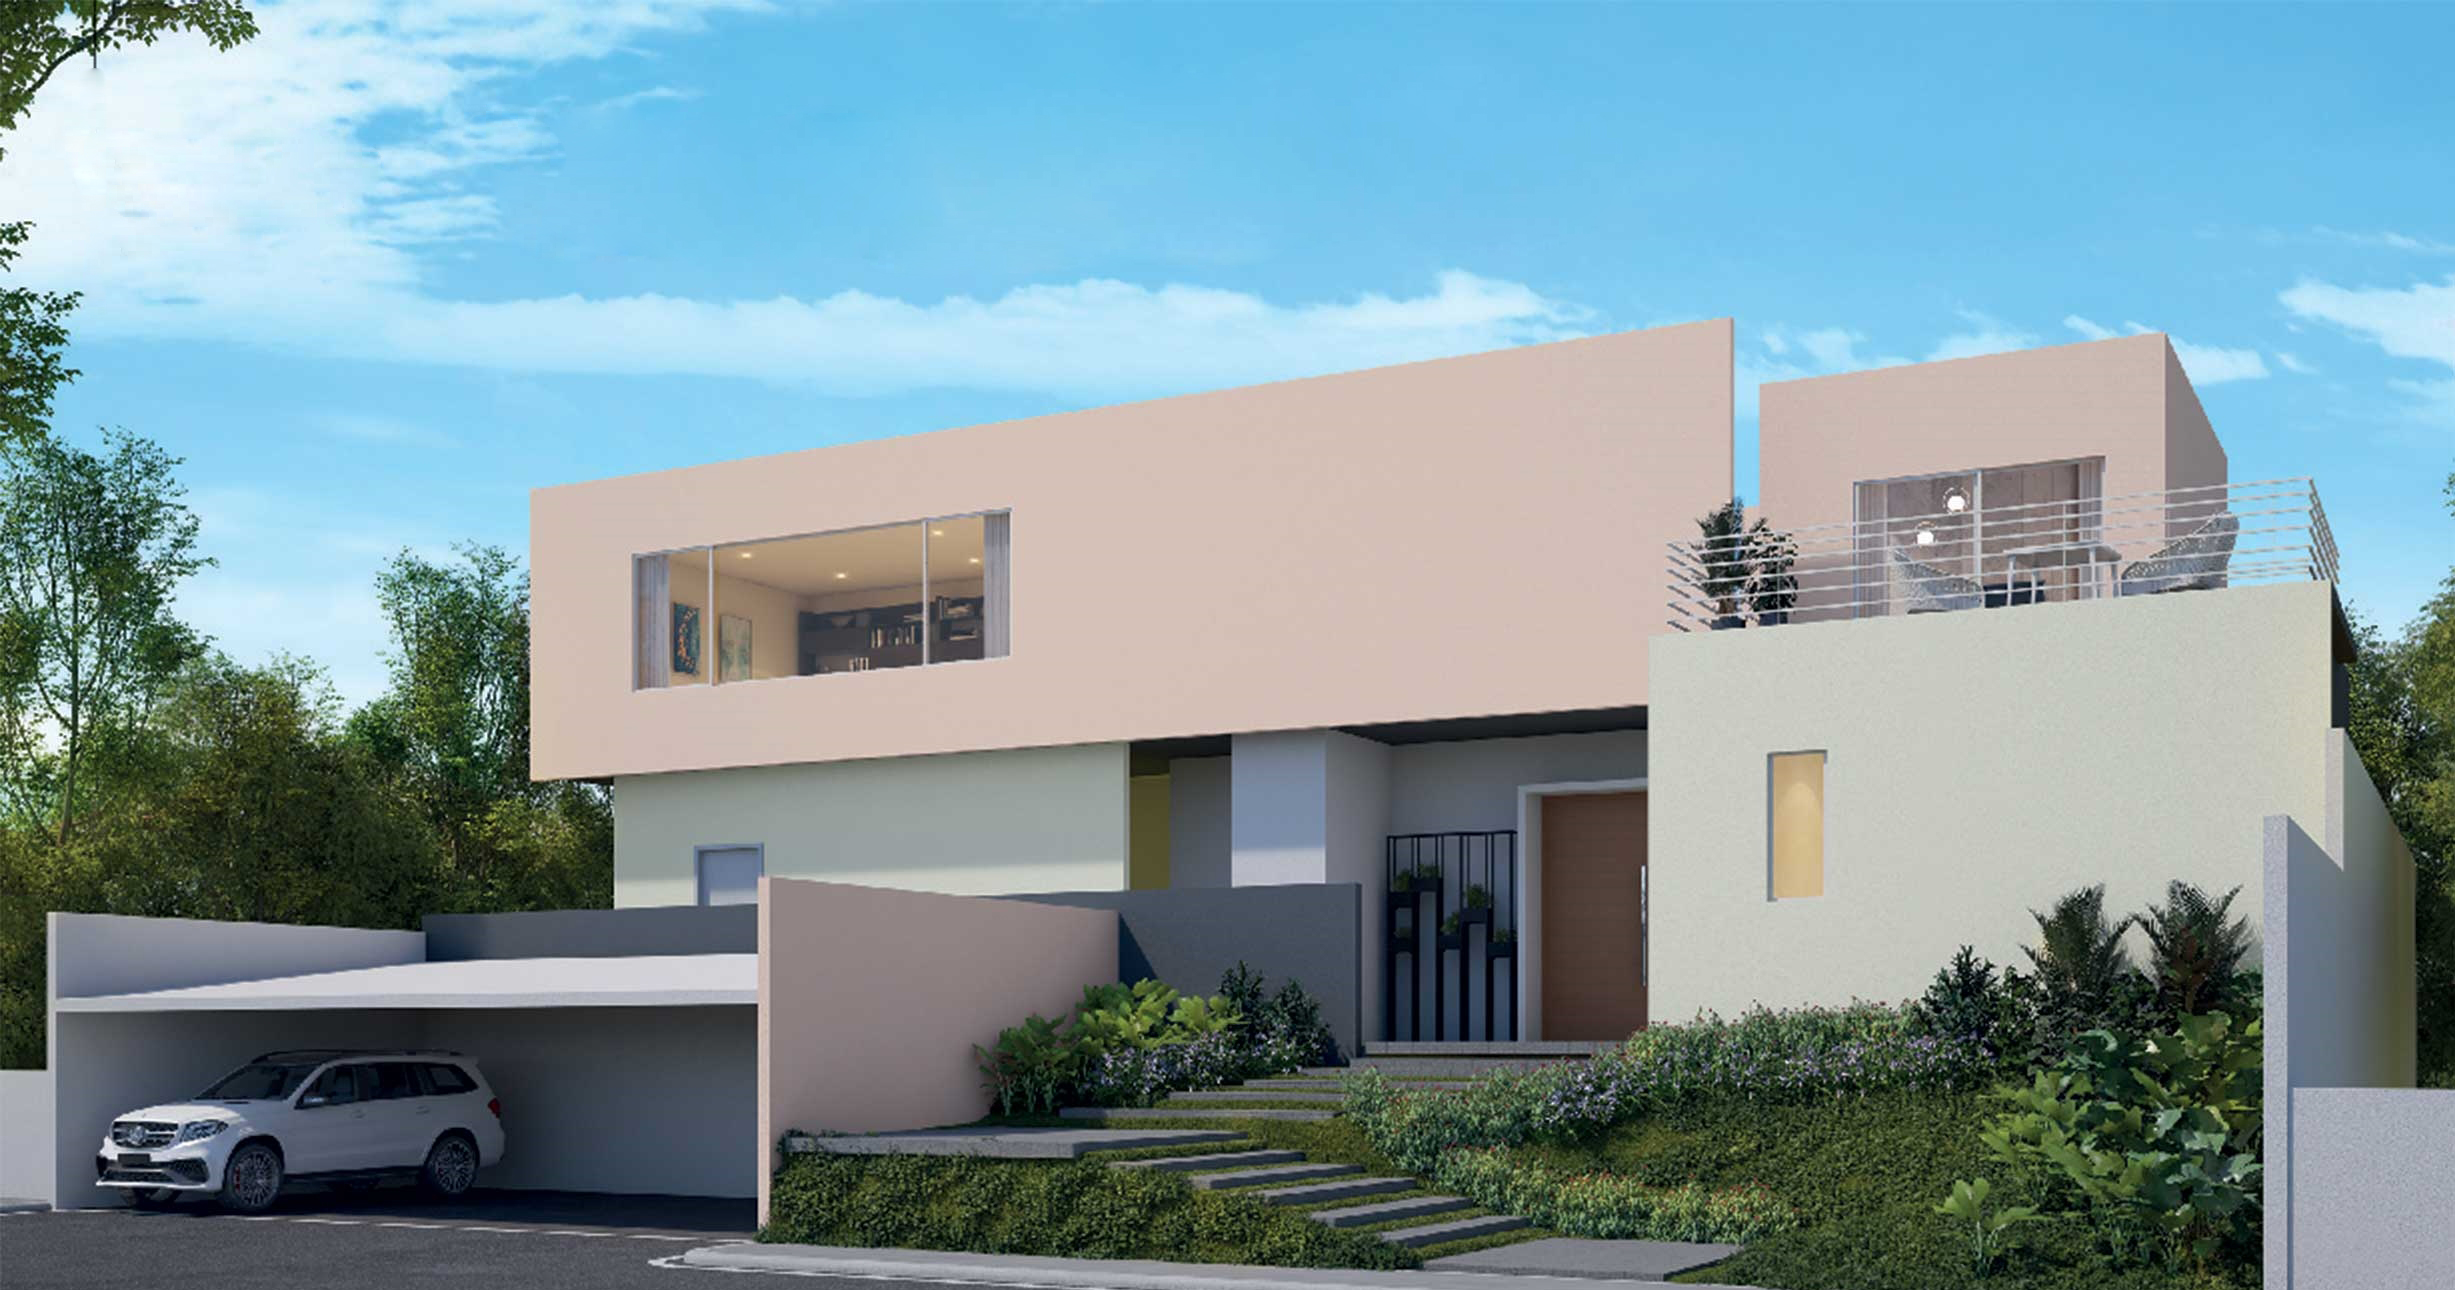 รีวิวสีทาบ้าน ที่ออกใหม่ในปี 2021-2022